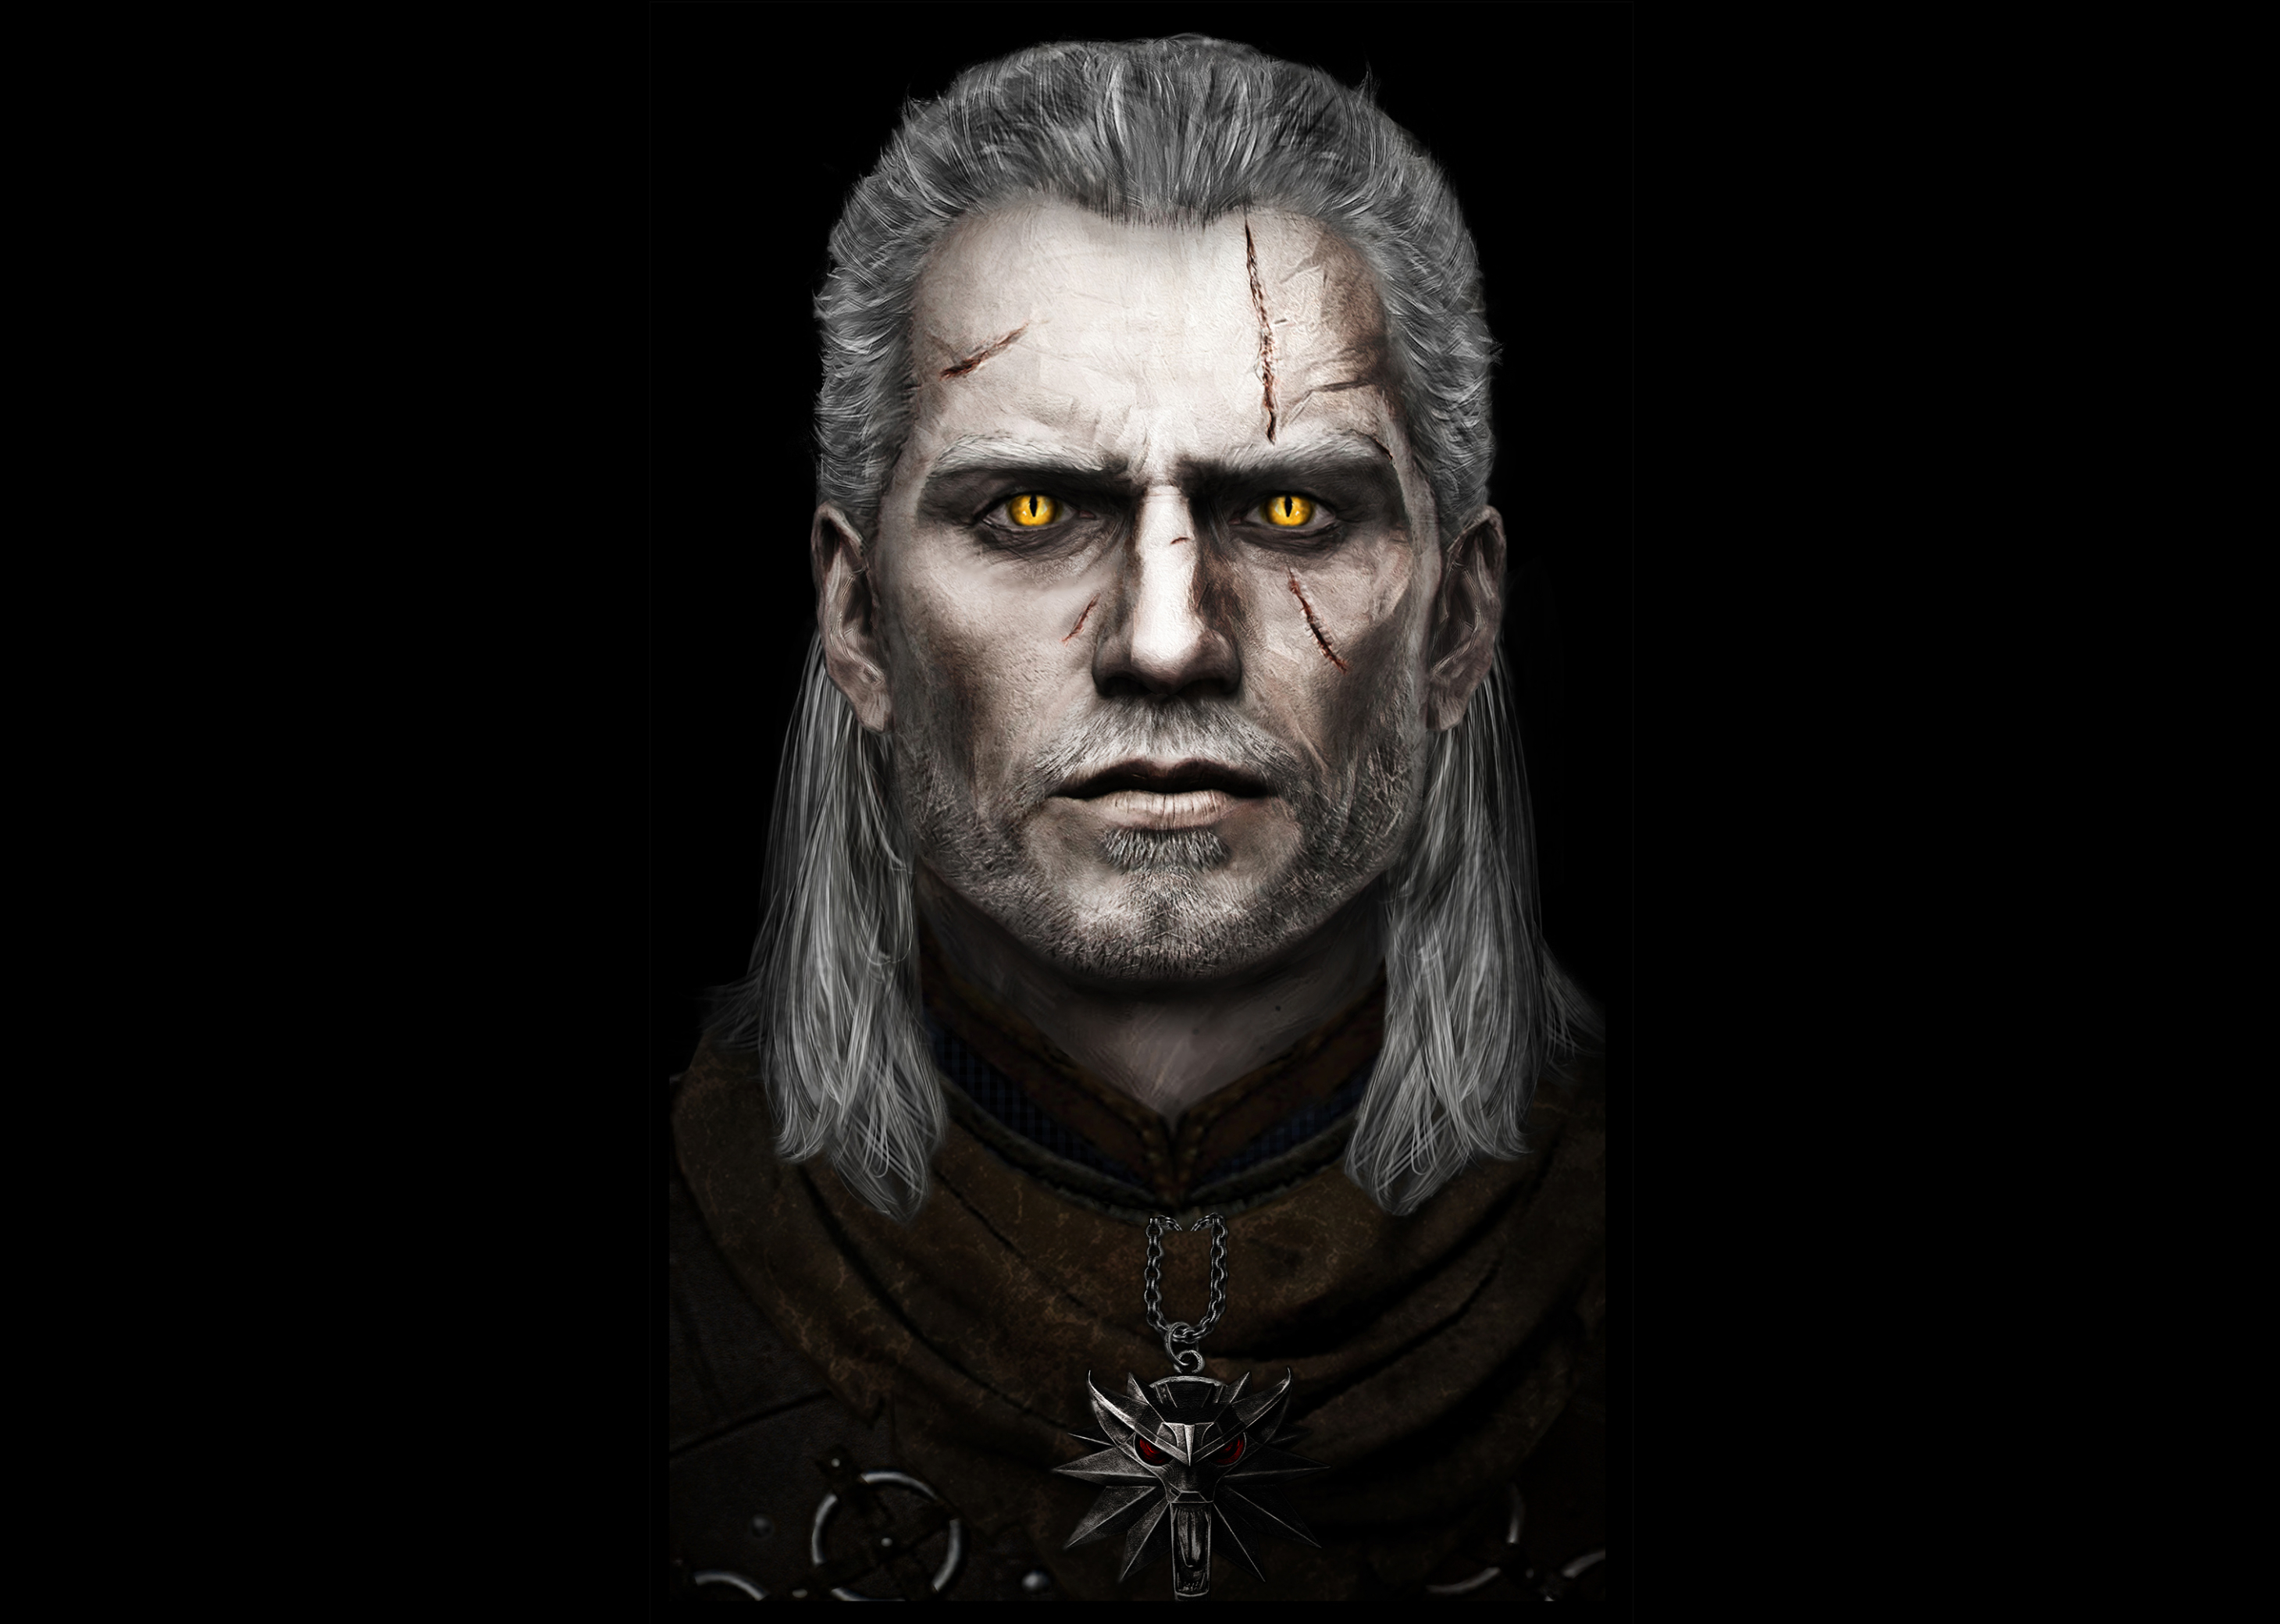 2920x2080 Resolution Henry Cavill As Geralt Of Rivia Fan Art 2920x2080 ...